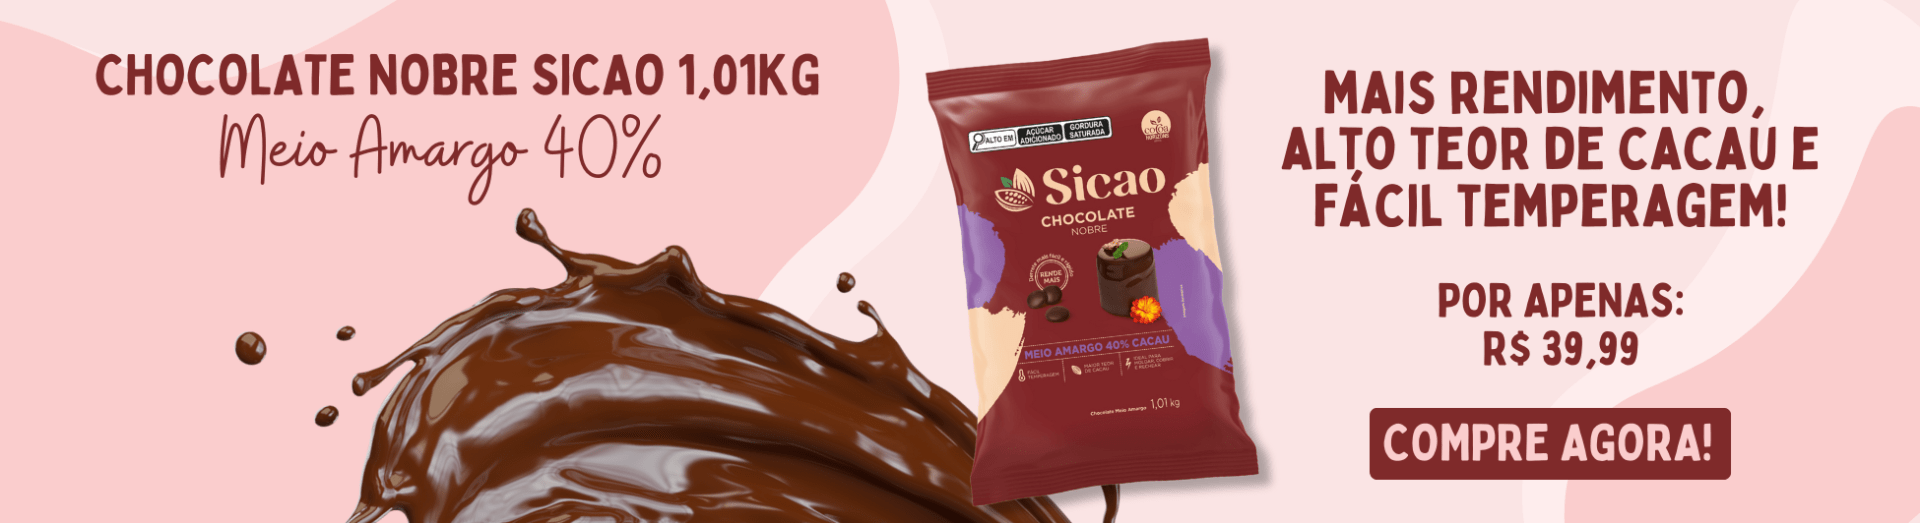 Chocolate Nobre Sicao 40% 1kg